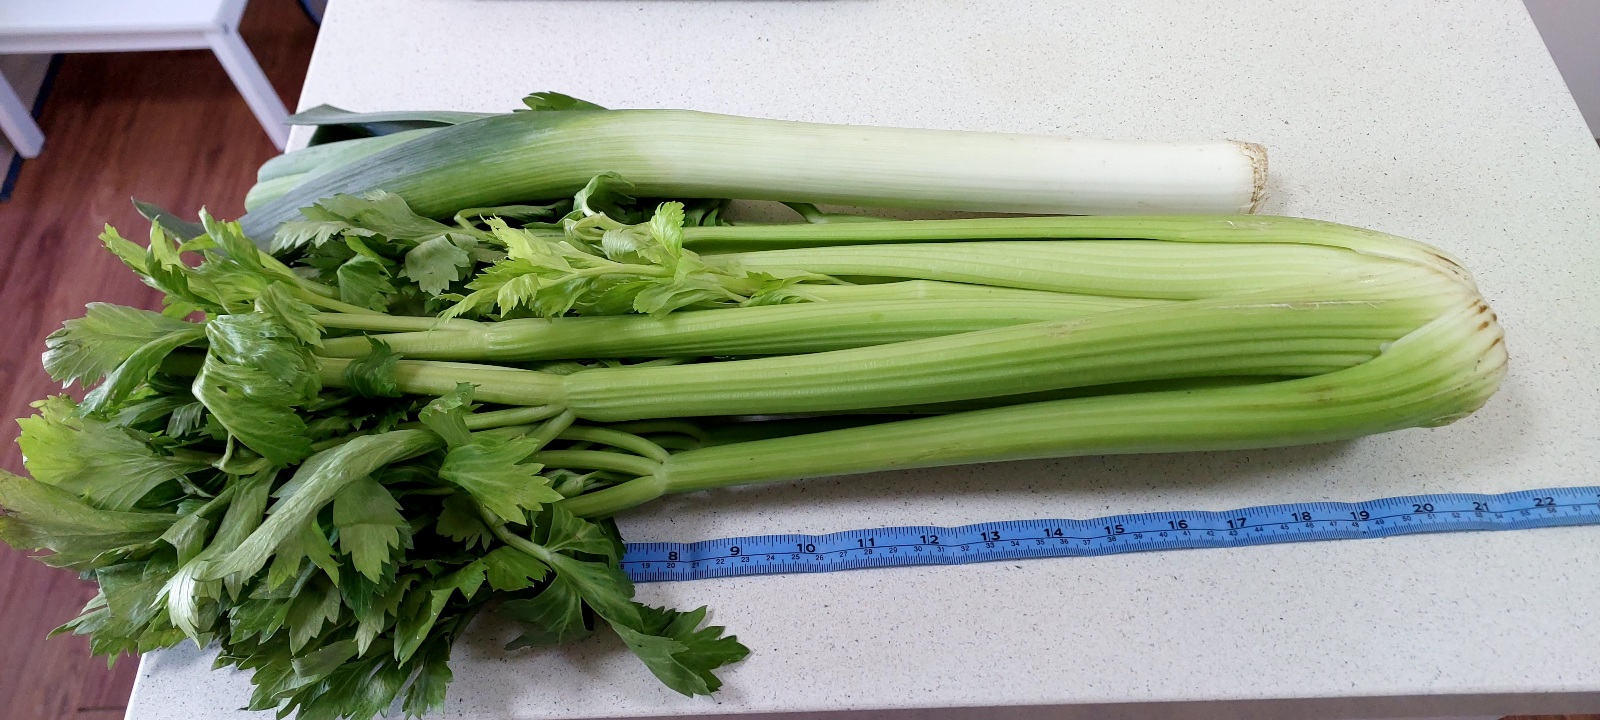 1 head of celery